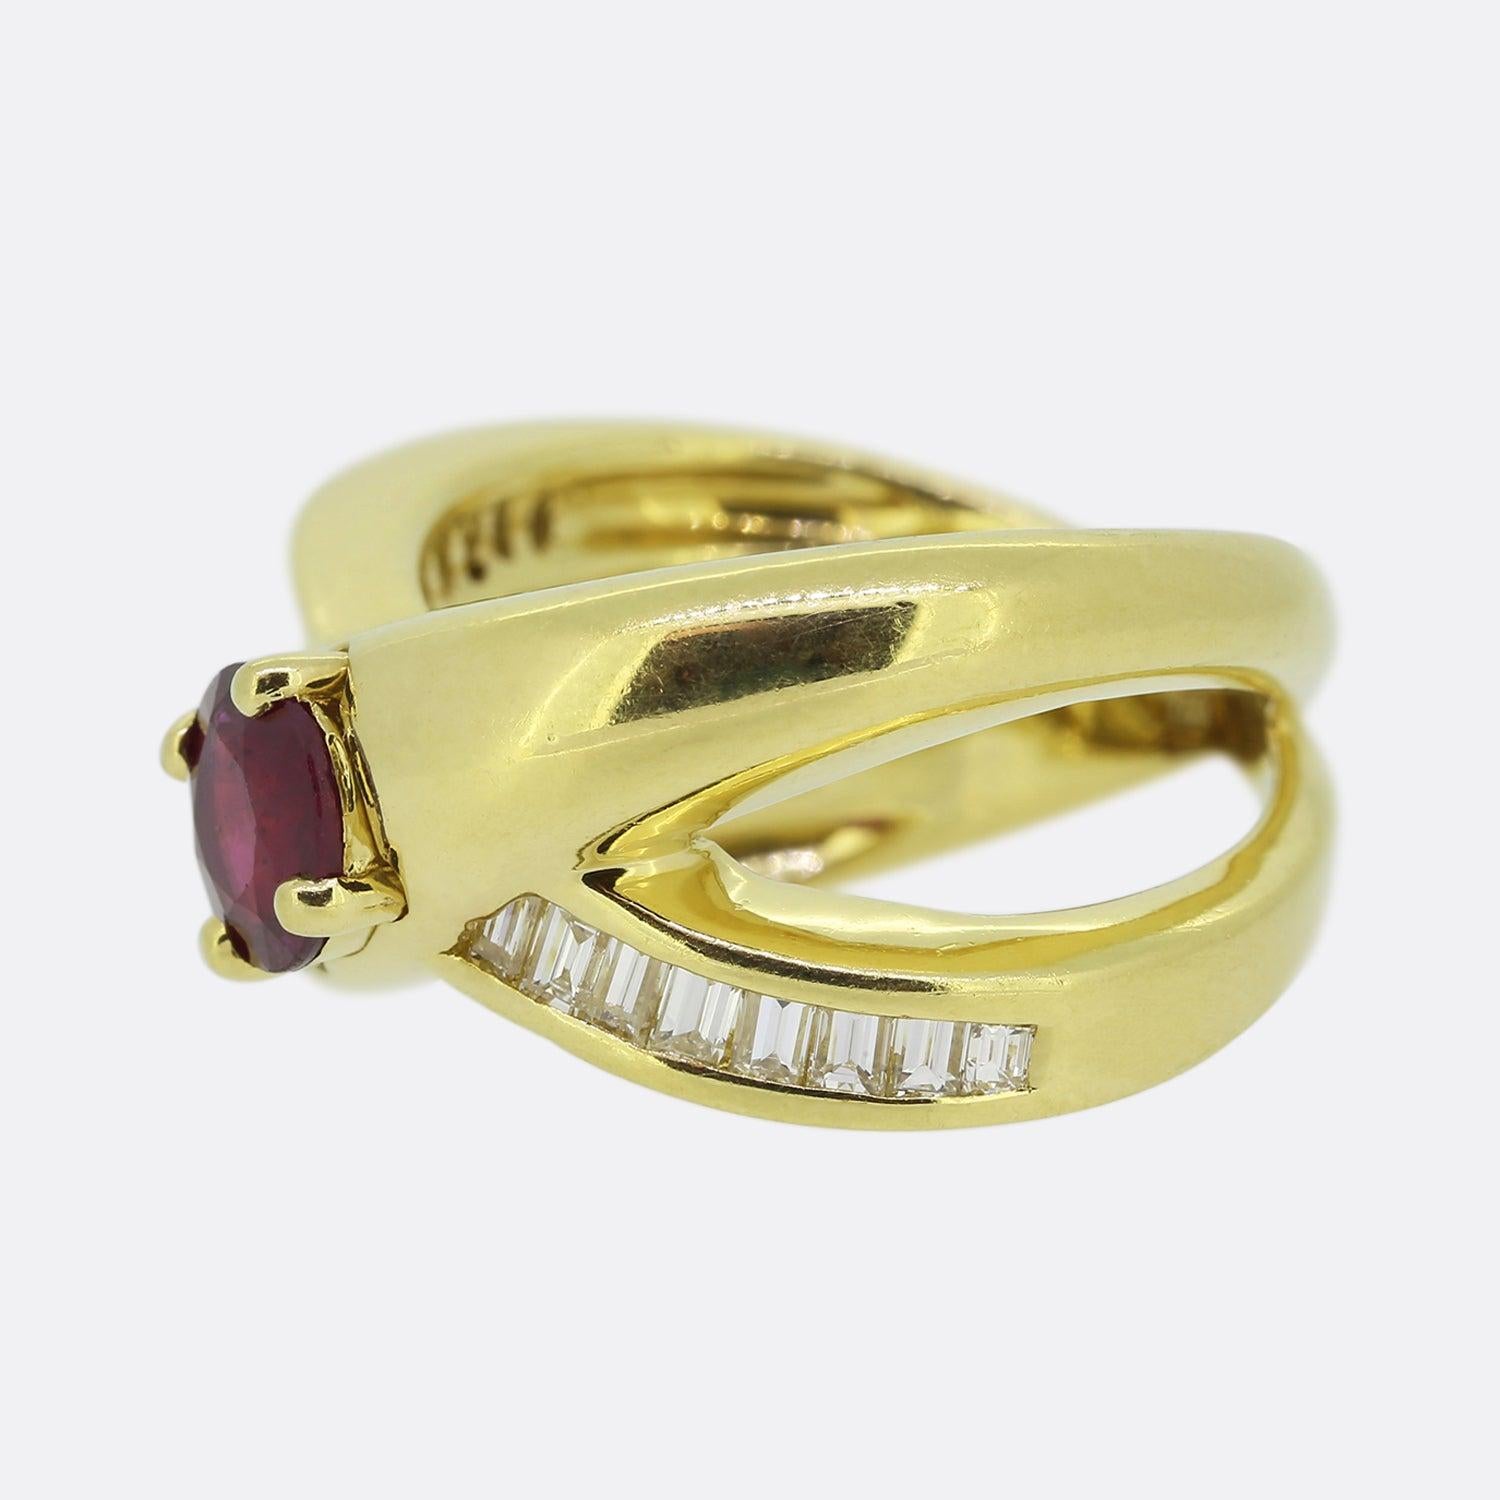 Hier haben wir einen schönen Crossover-Ring im Vintage-Stil. Im Mittelpunkt des Rings steht ein runder Rubin von 1,0 Karat, der in einer Fassung mit vier Klauen sitzt. Auf einem der Bänder sind Diamanten im Baguetteschliff gefasst, die zur Mitte hin